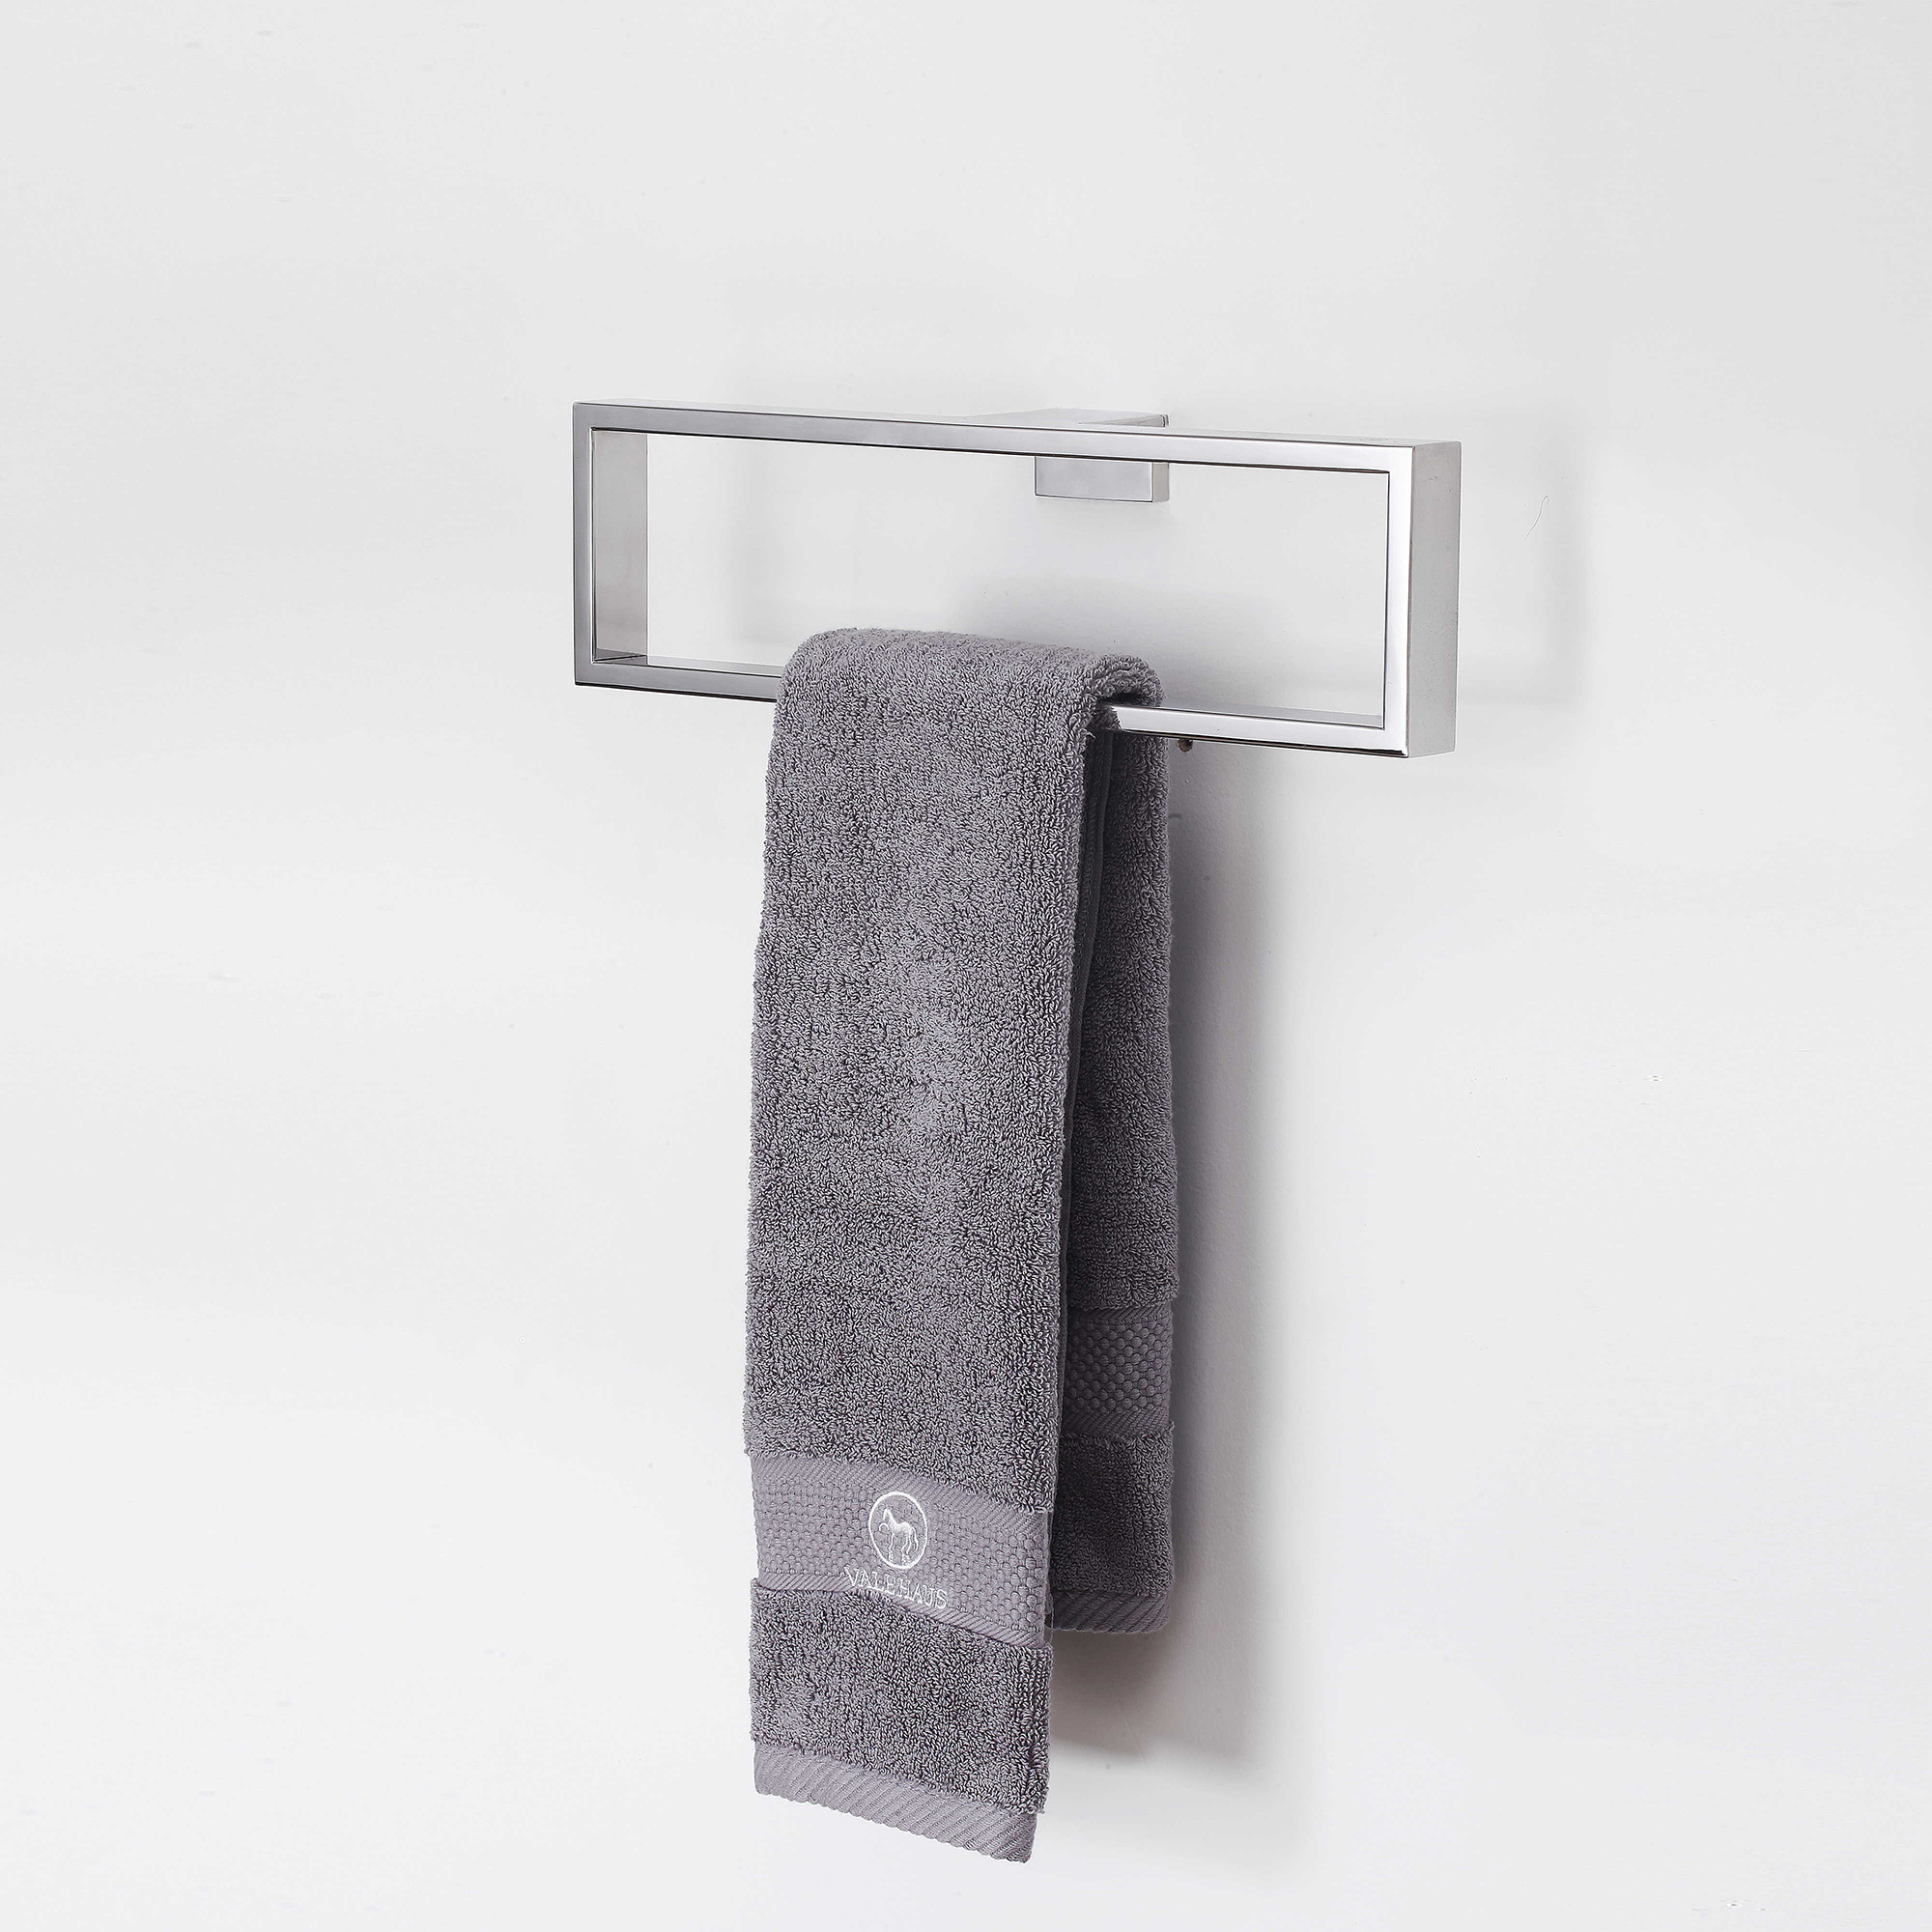 Towel ring-006.jpg